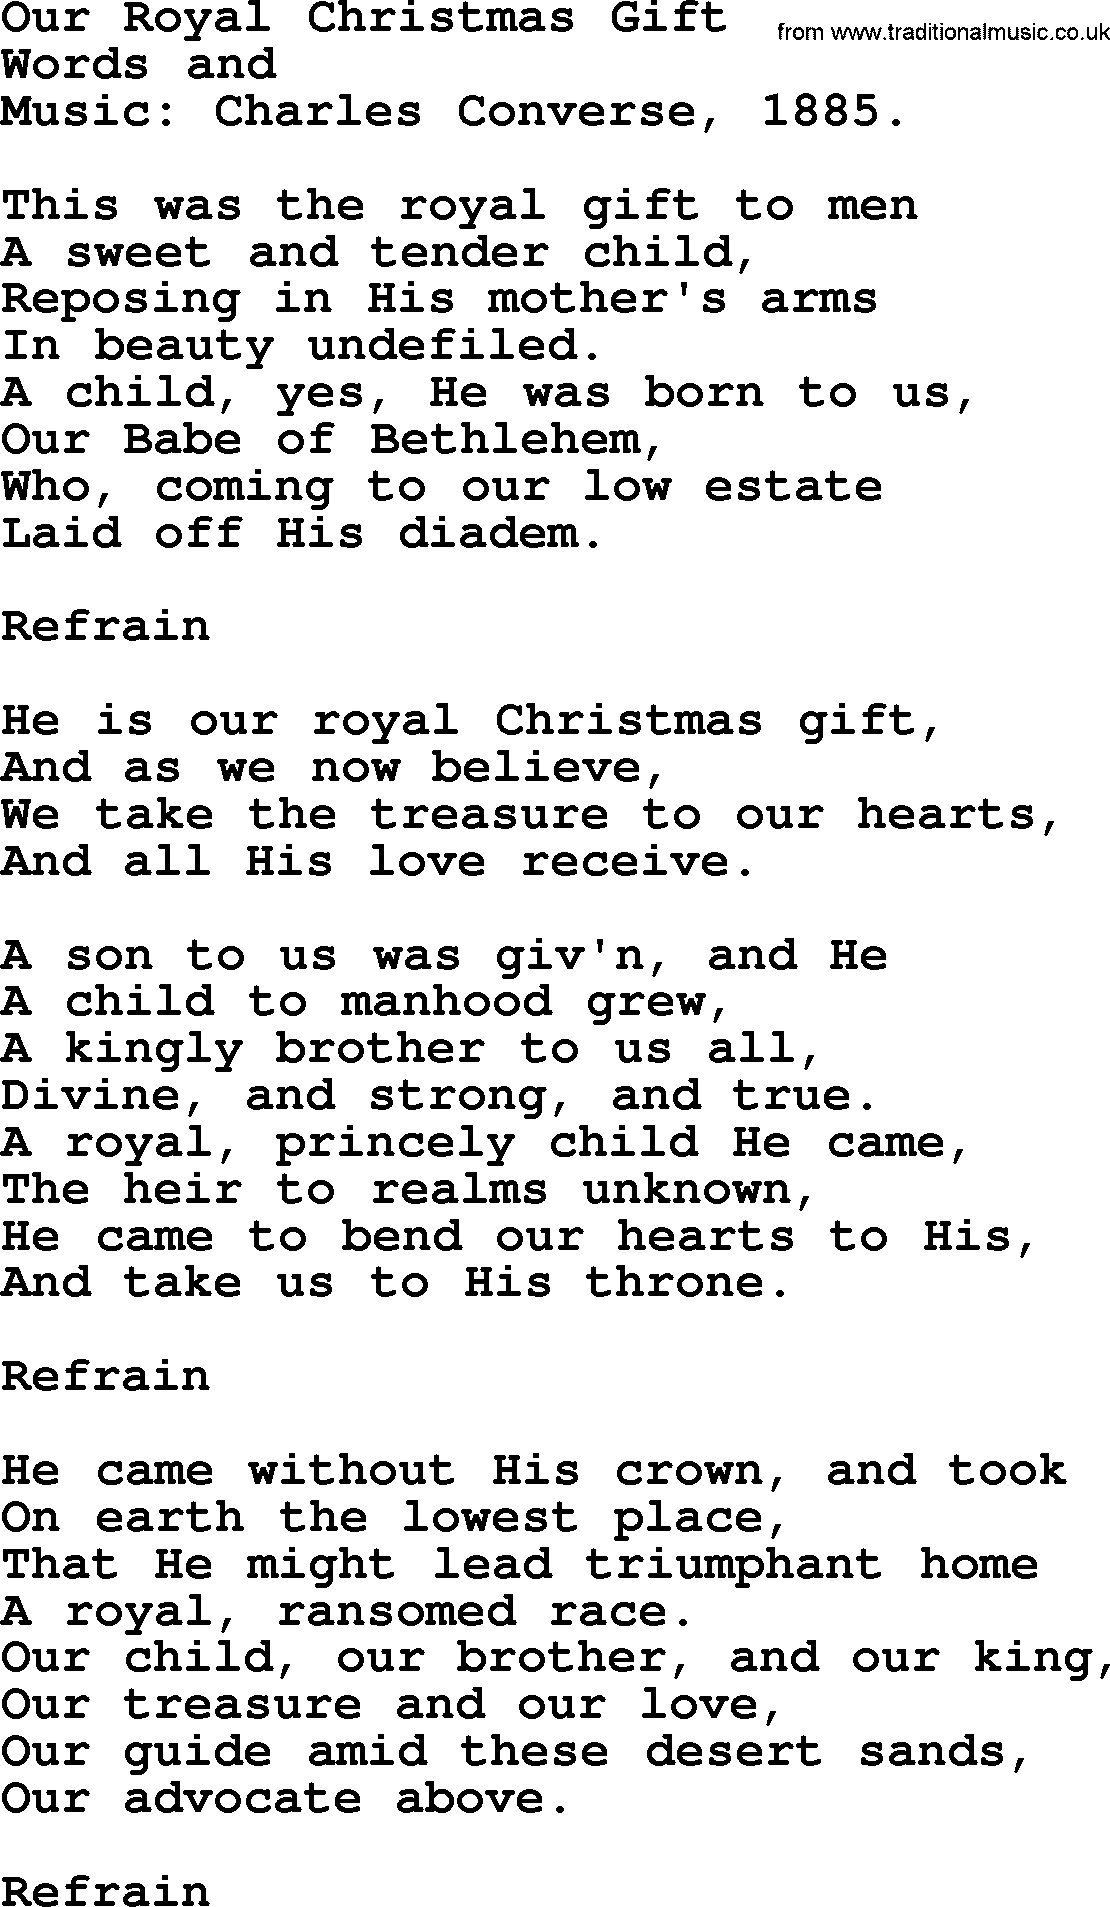 Christmas Hymns, Carols and Songs, title: Our Royal Christmas Gift, lyrics with PDF